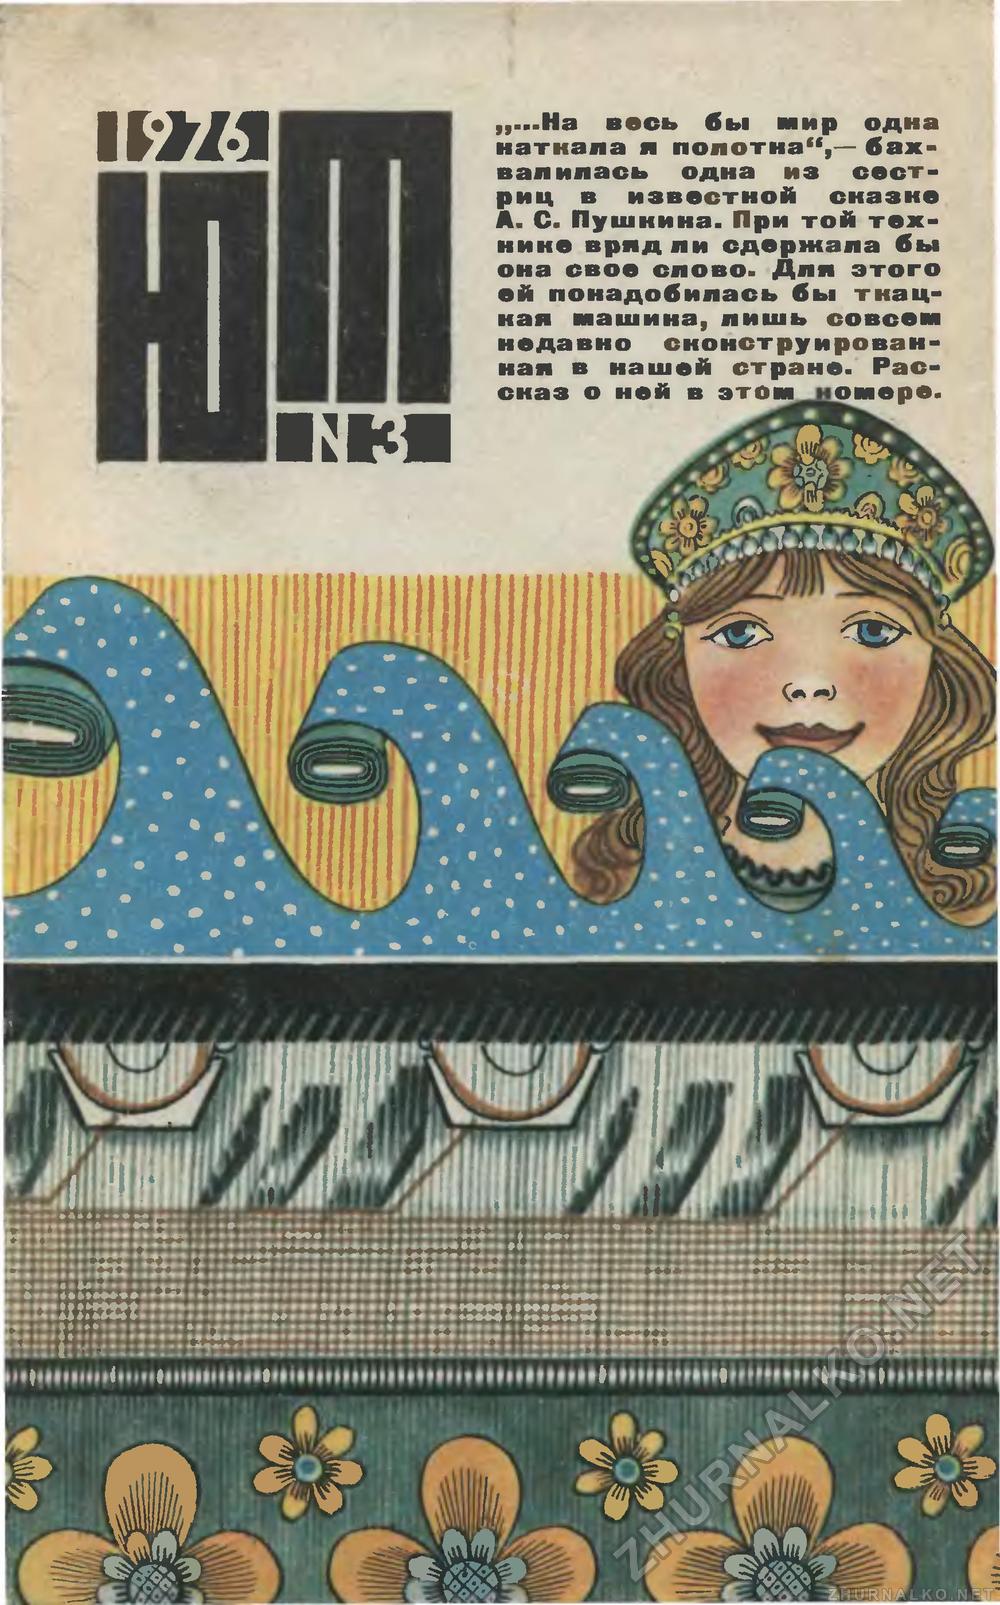   1976-03,  1